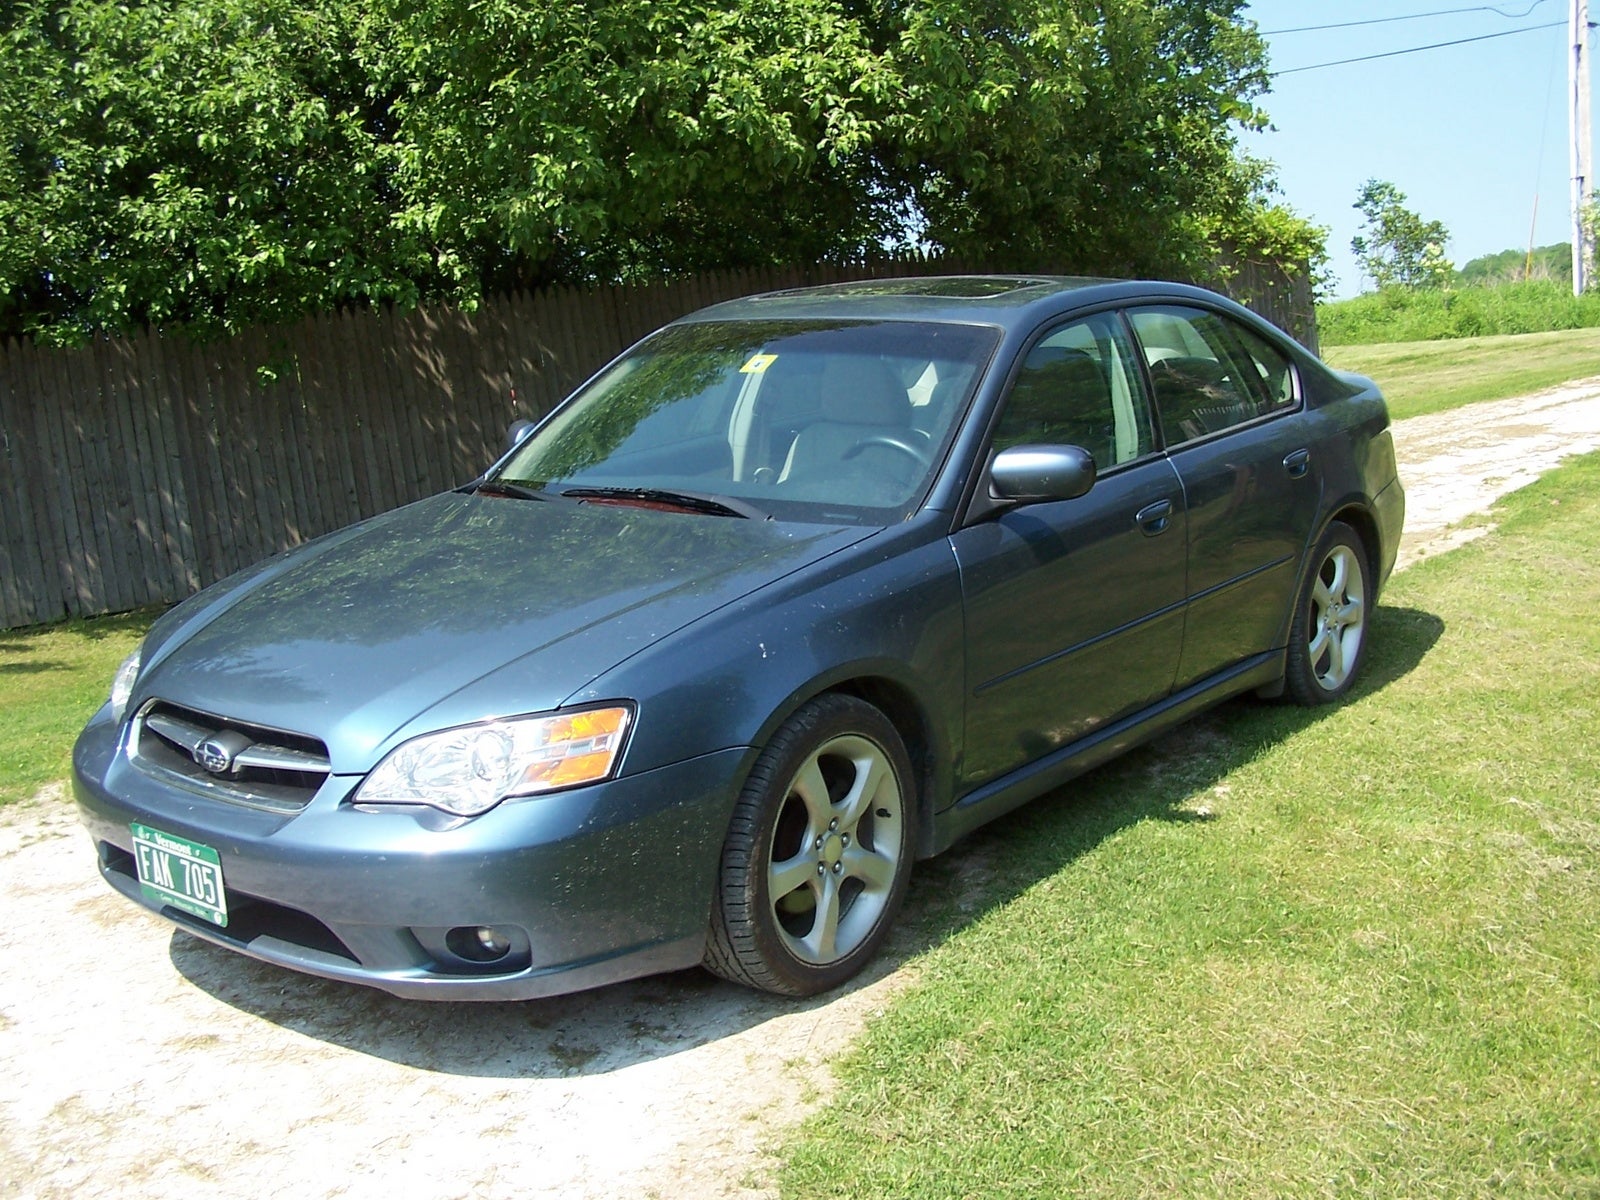 2006 Subaru Legacy Exterior Pictures CarGurus